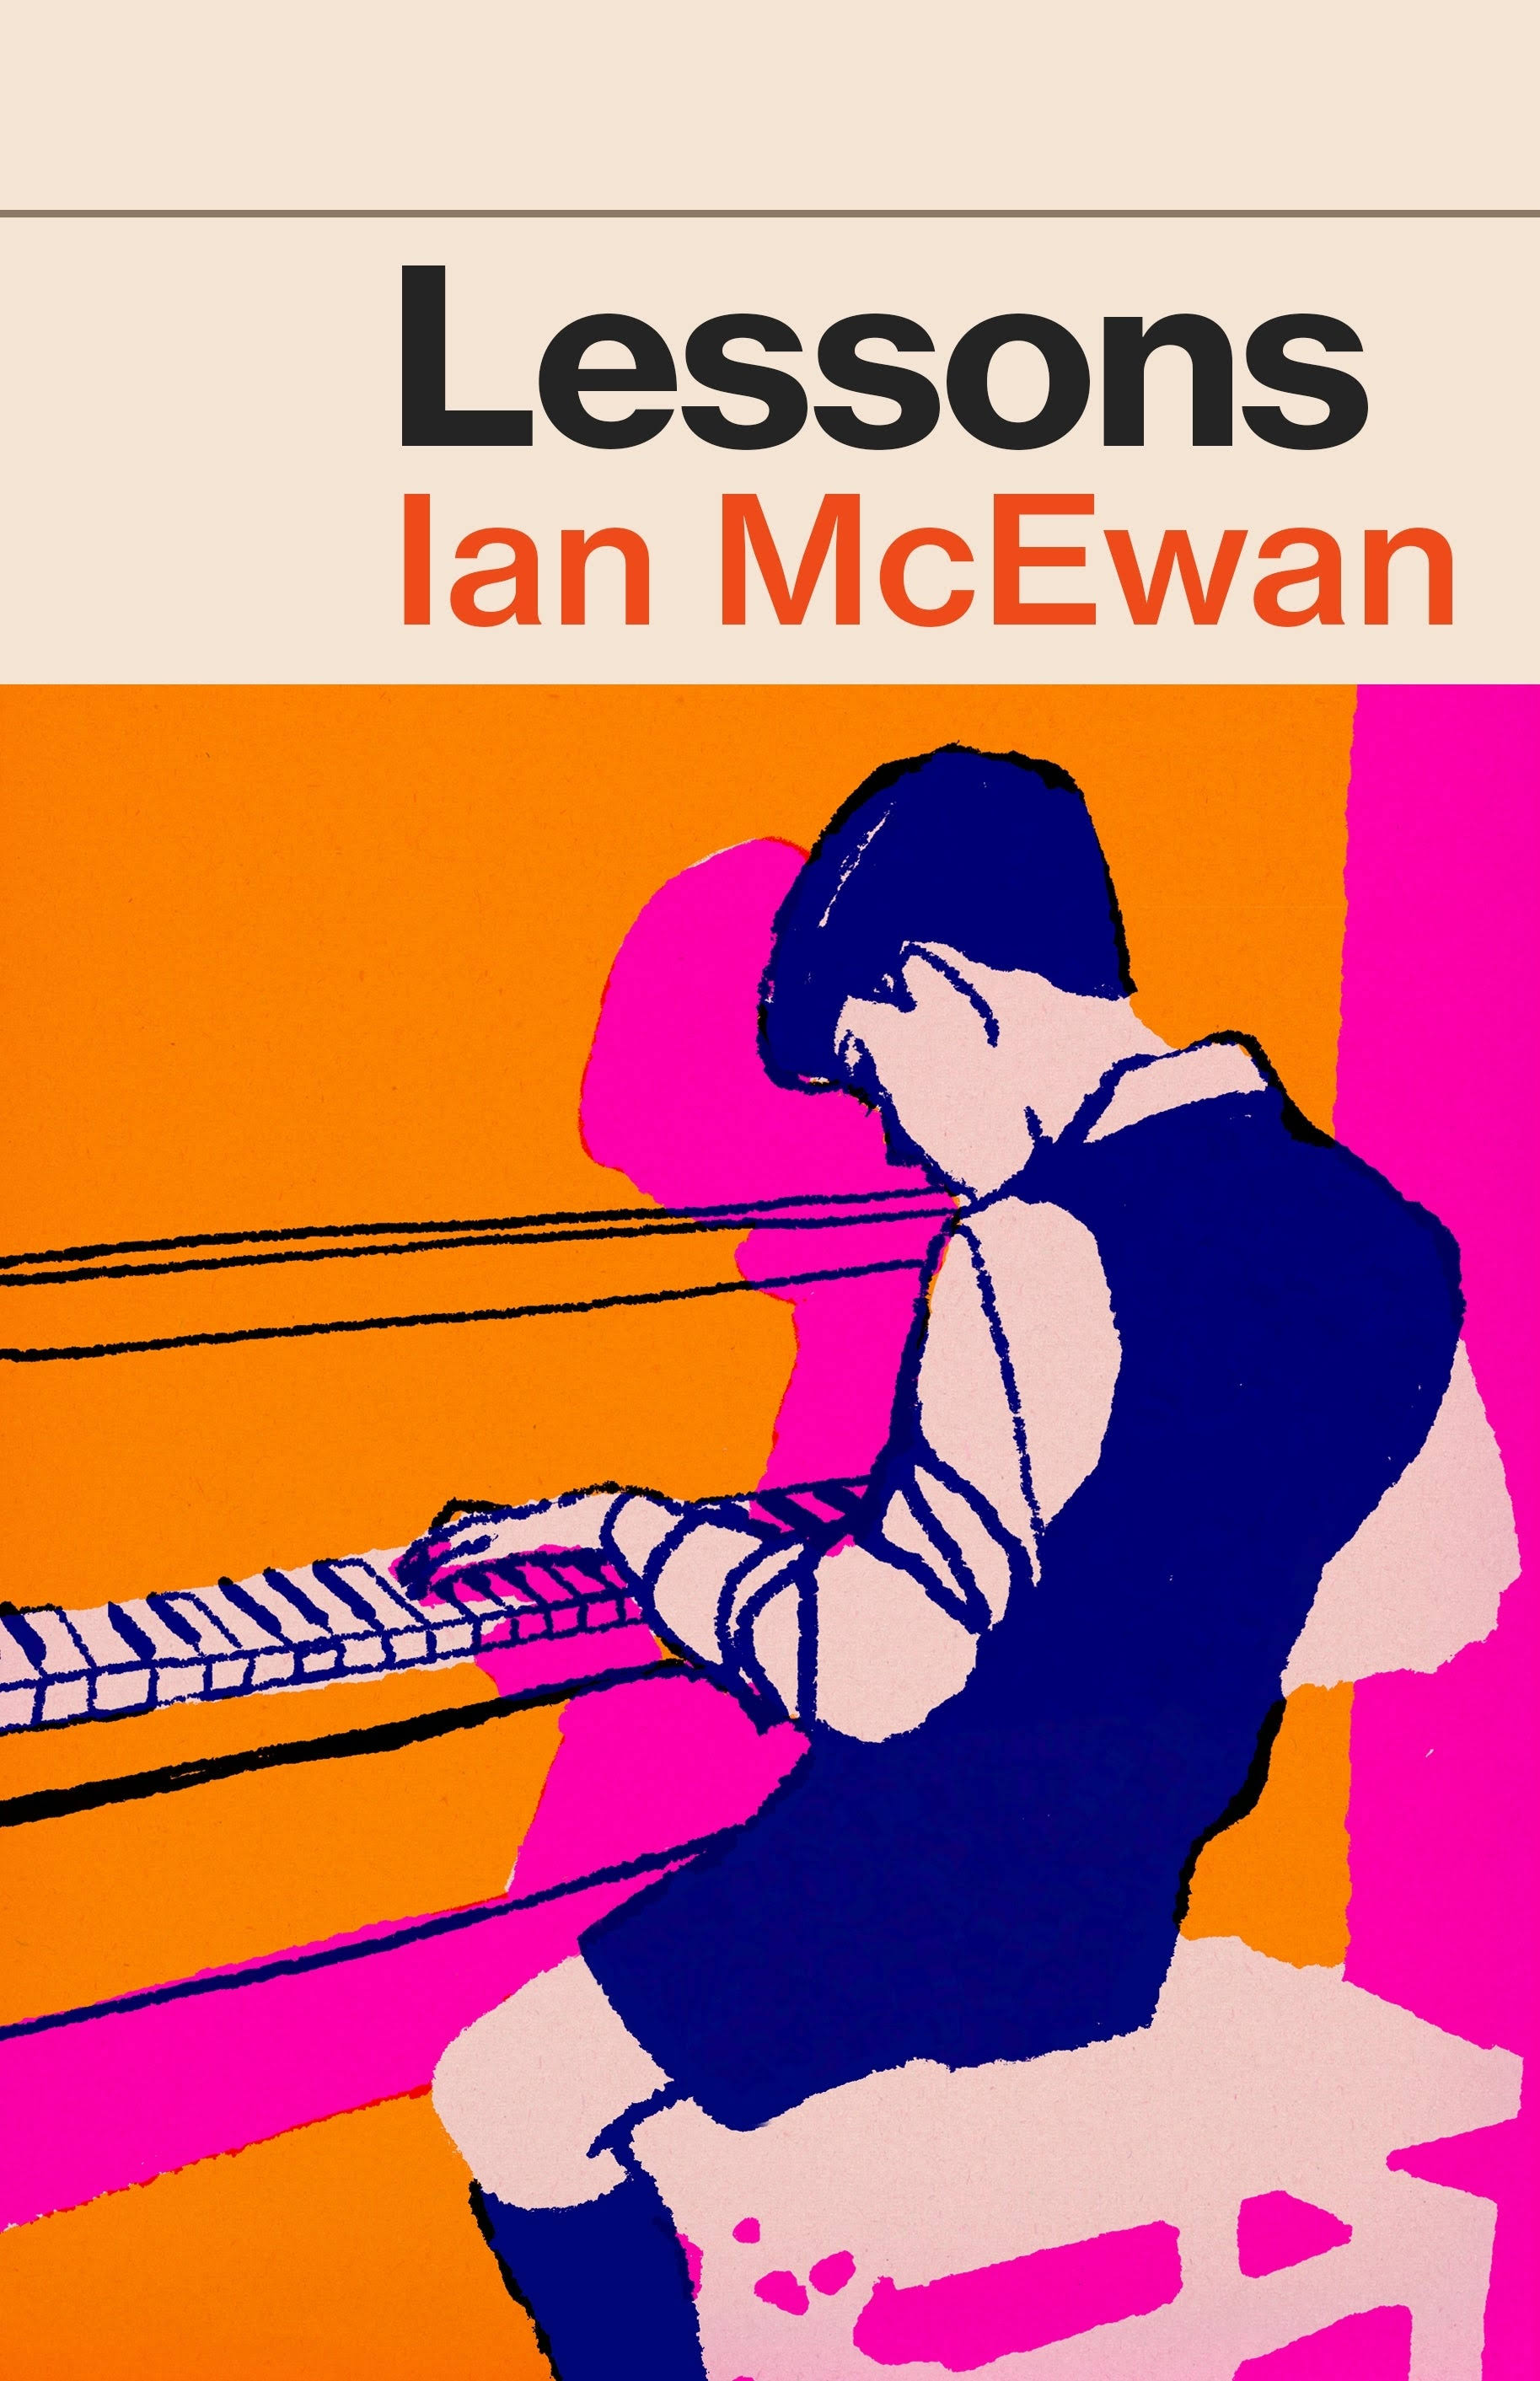 Lessons by Ian McEwan